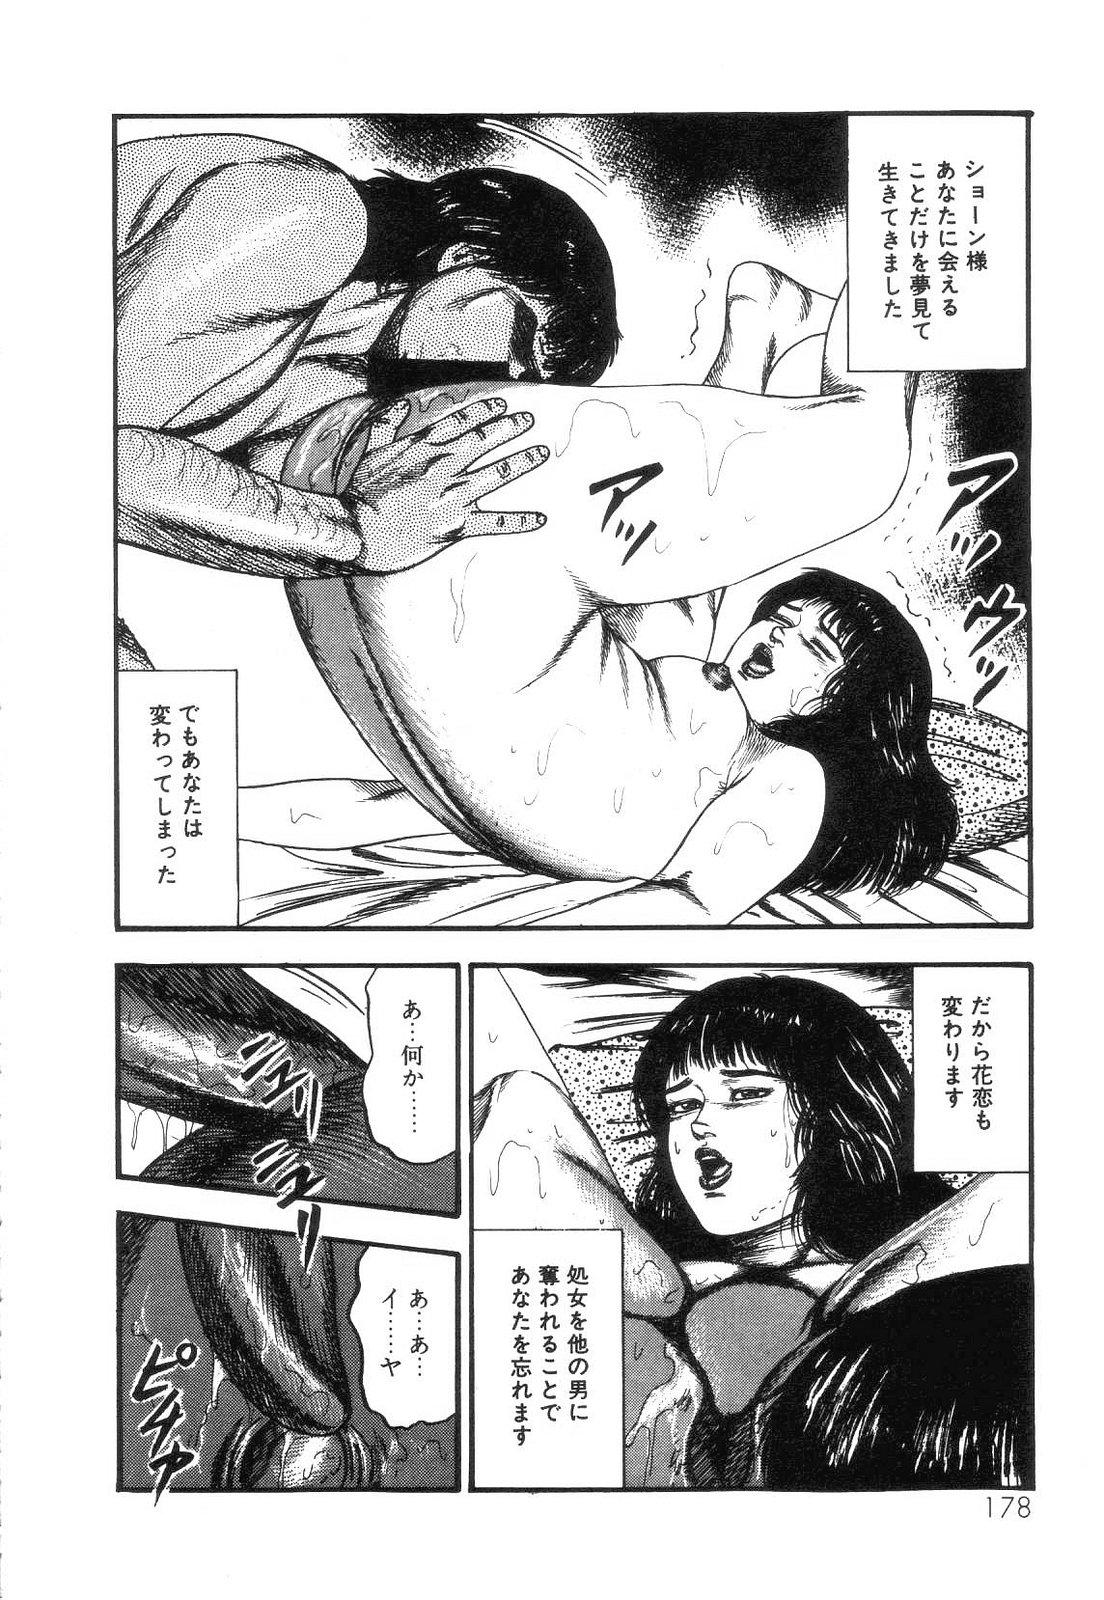 Shiro no Mokushiroku Vol. 4 - Bichiku Karen no Shou 179